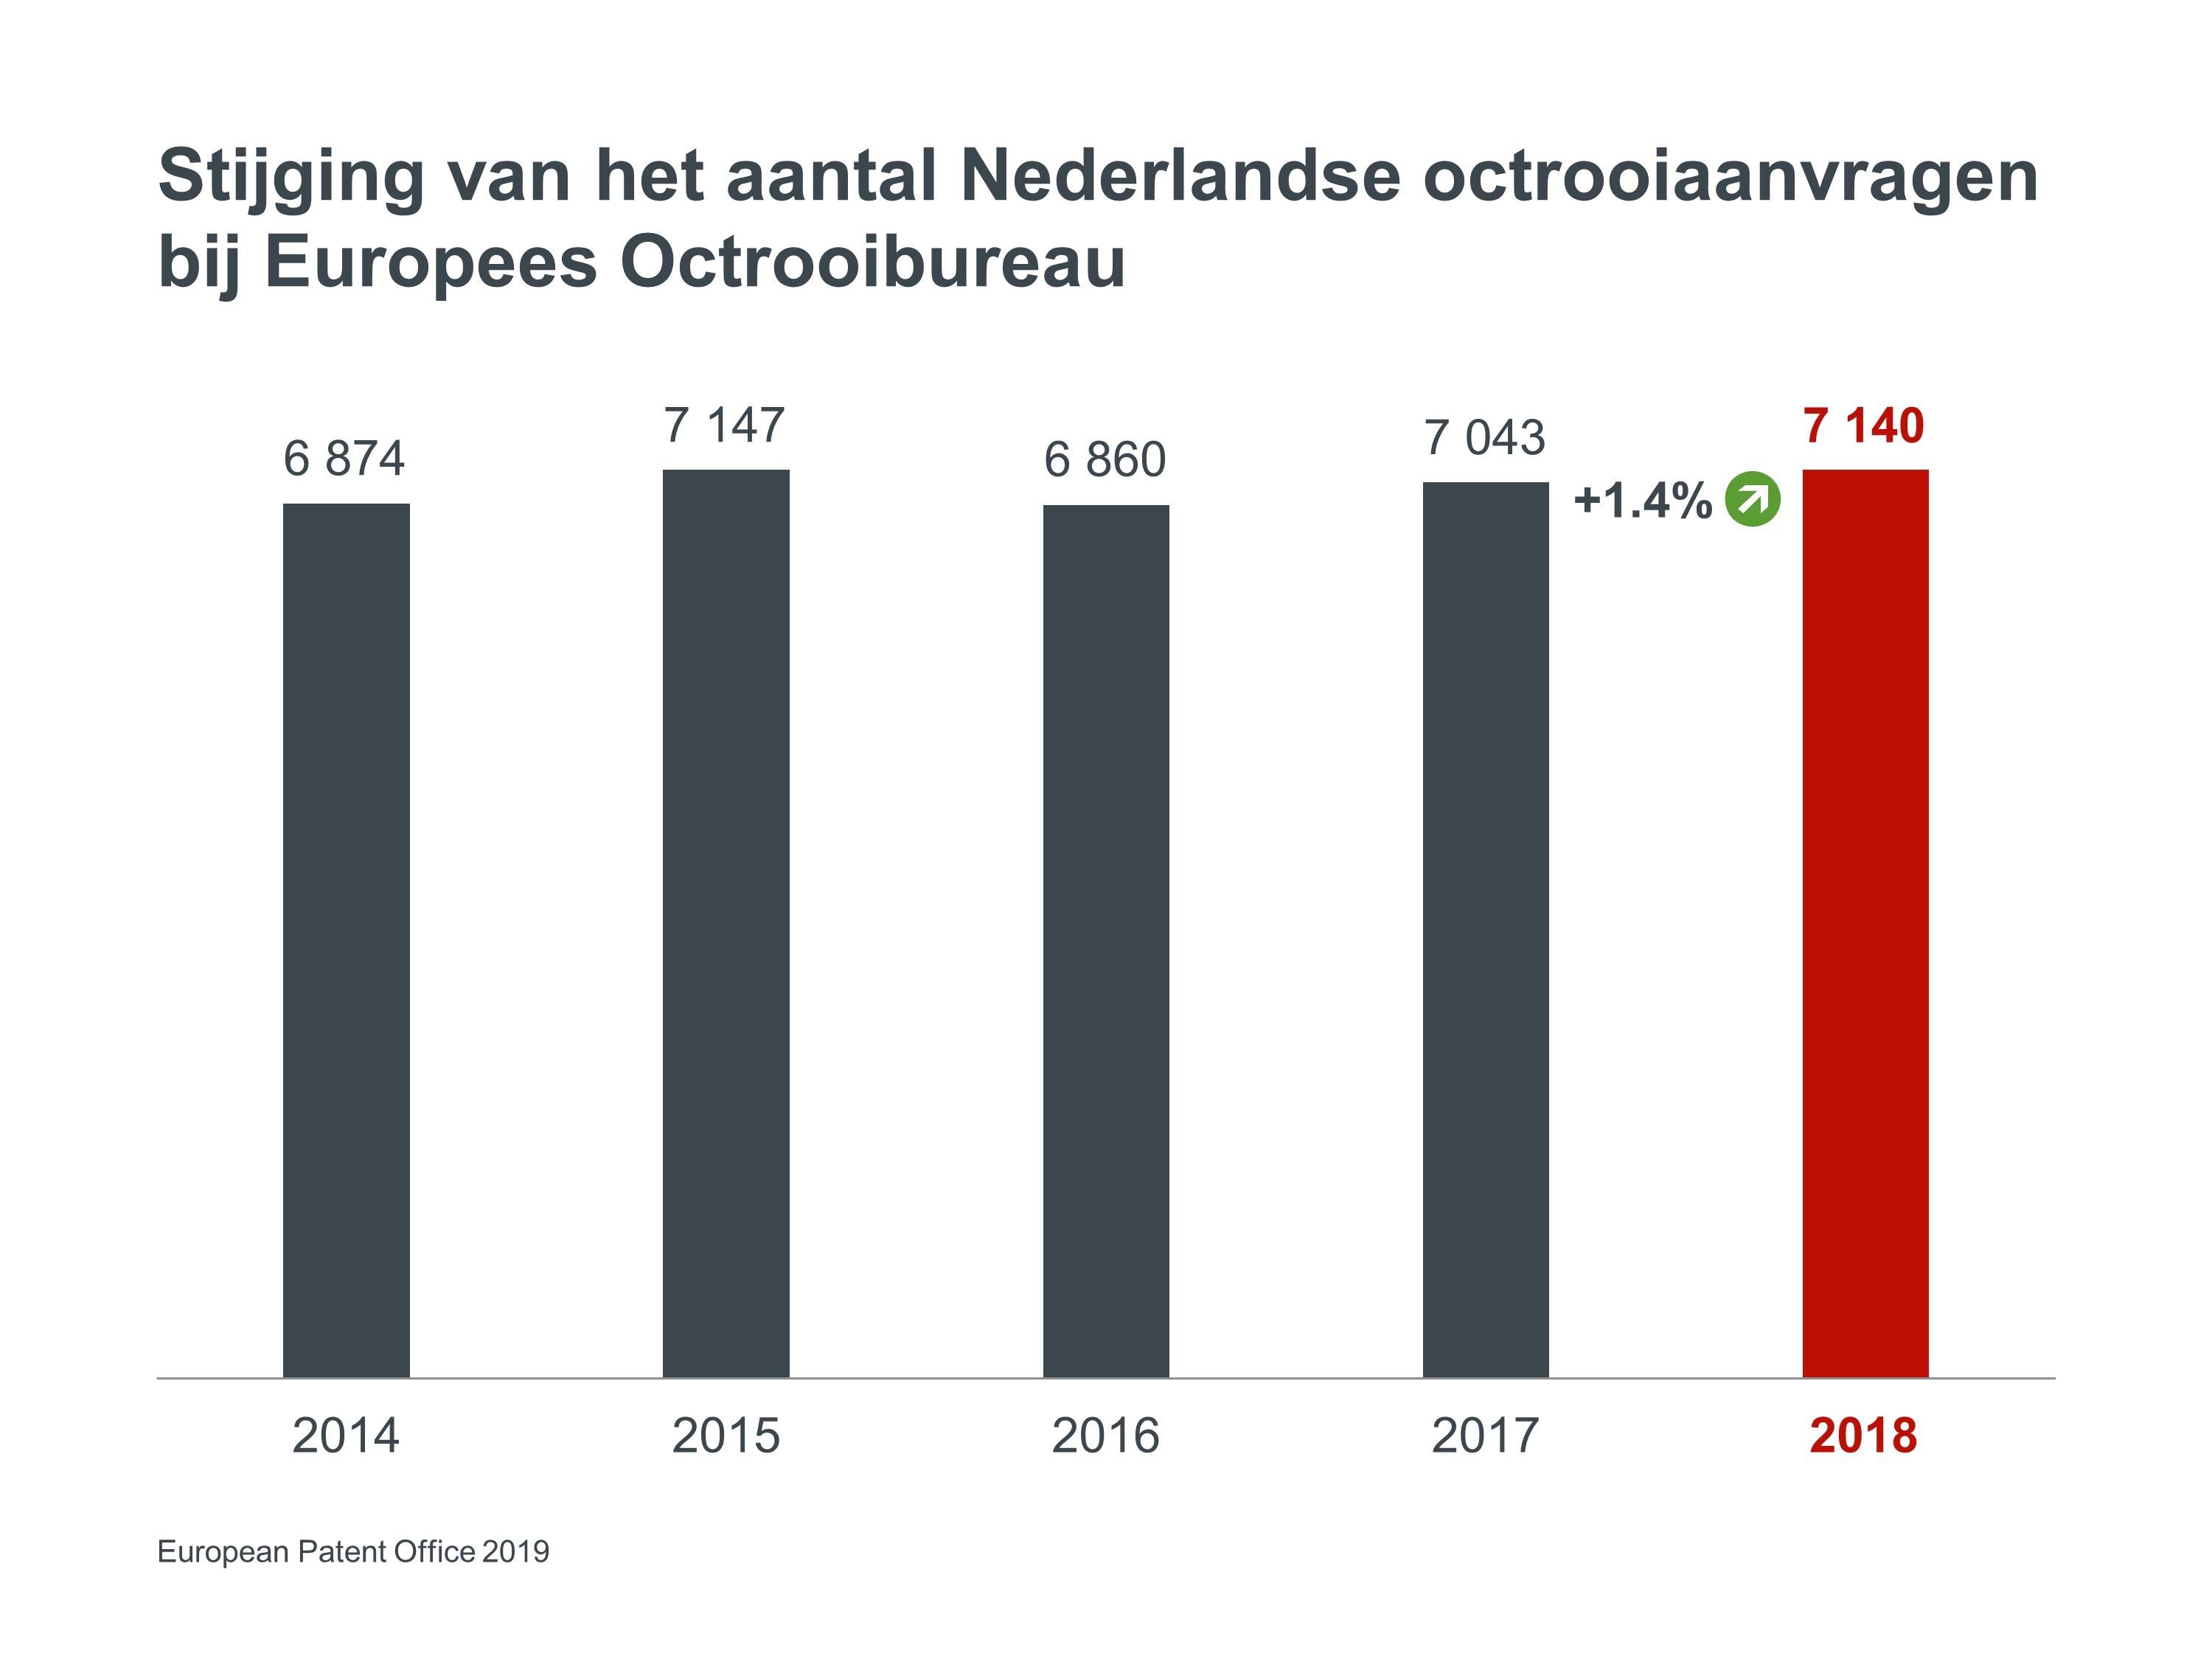 Stijging aantal Europese octrooiaanvragen uit Nederland